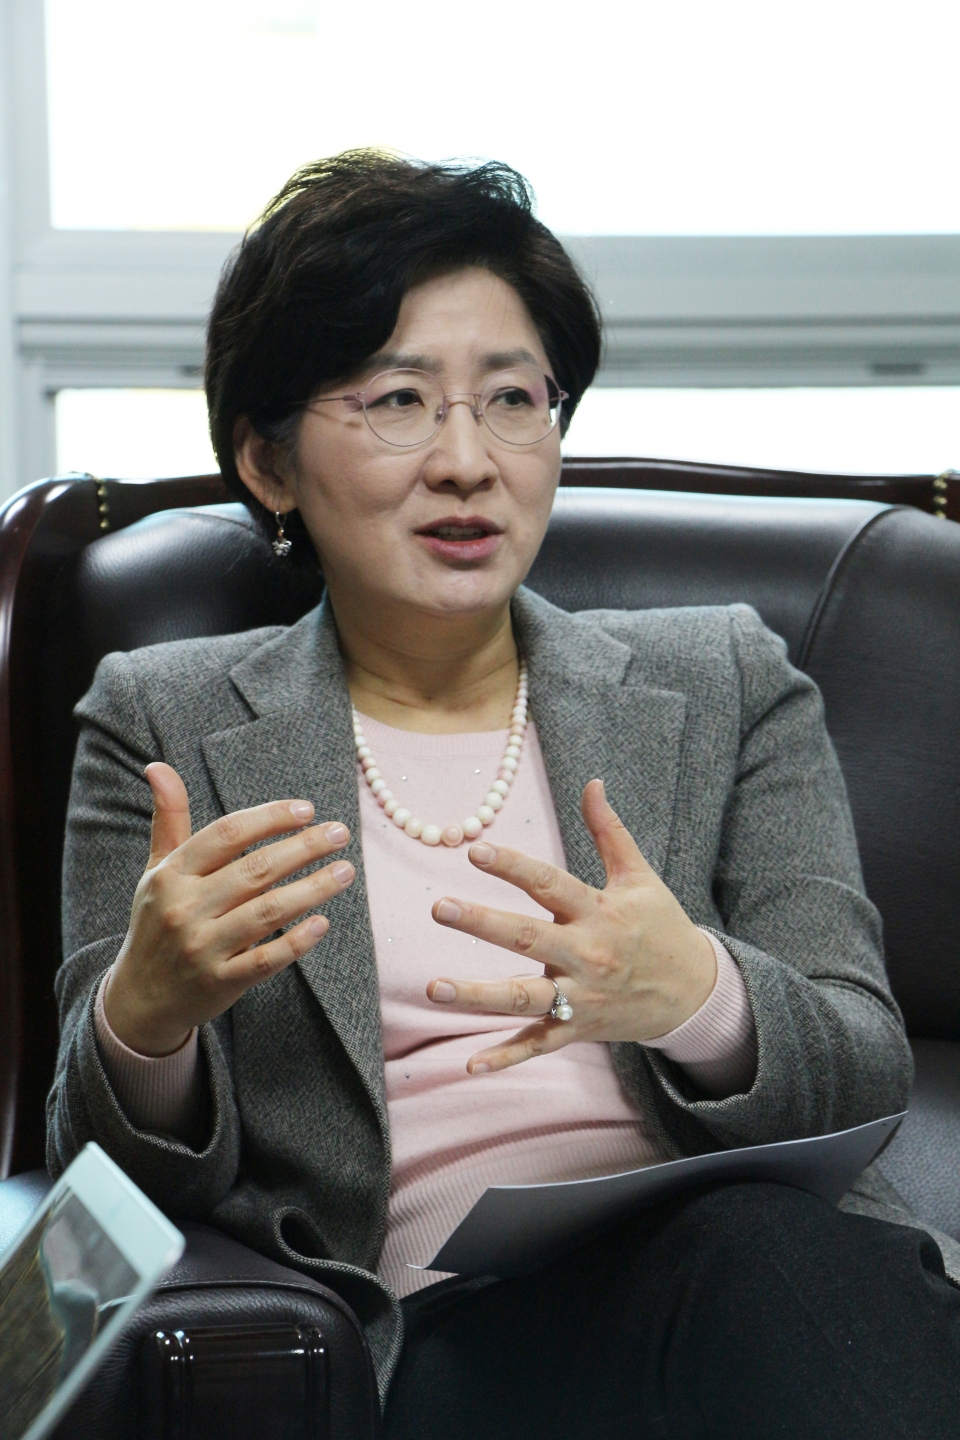 박주현 민주평화당 국회의원 | 농림축산식품해양수산위원회 위원